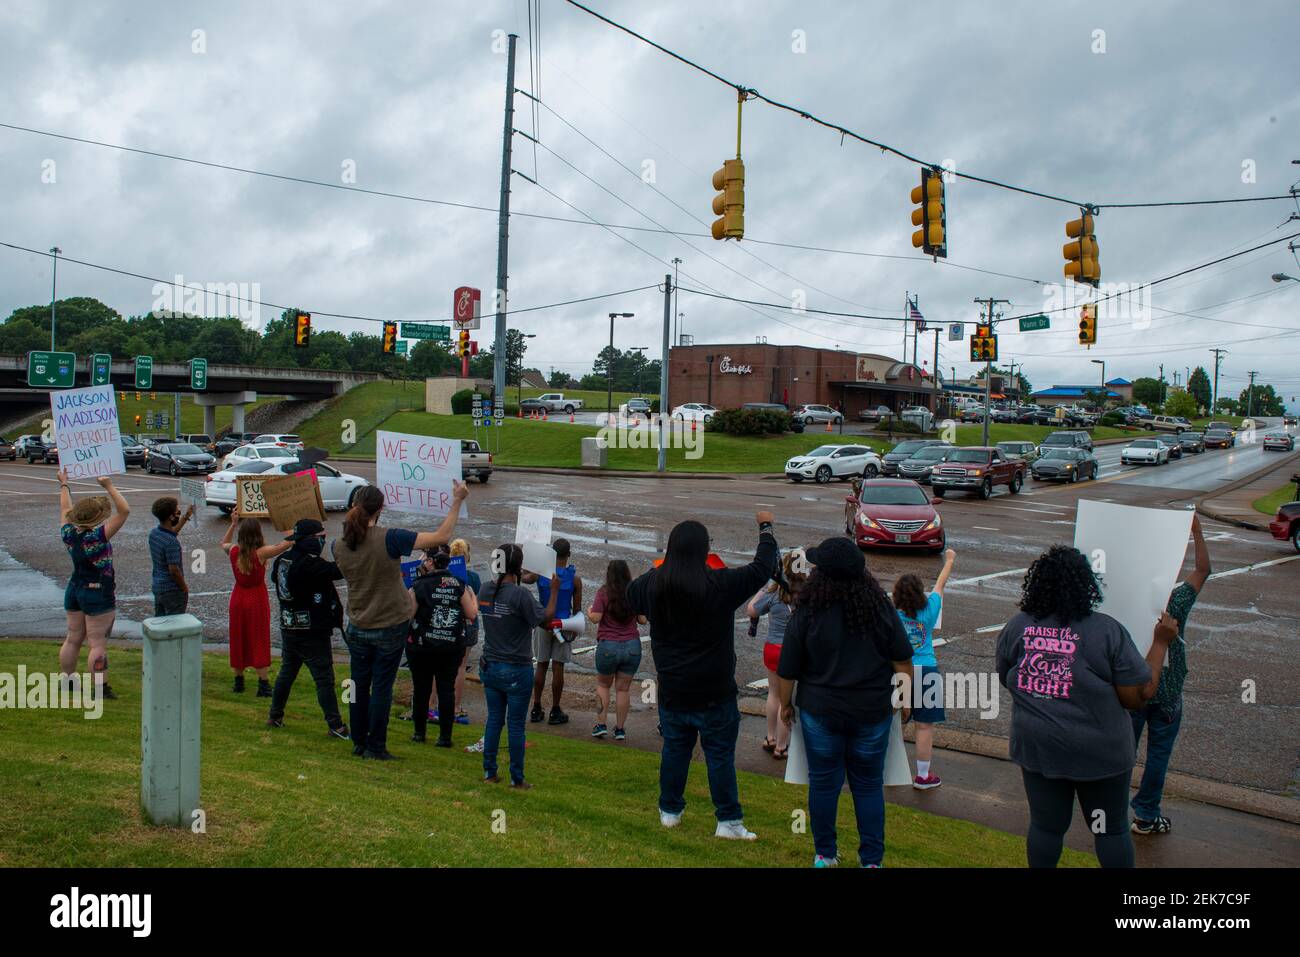 El tercer Rallye "no puedo respirar" con una asistencia de 20 personas se reúne con señales y protestas contra la bandera confederada en Jackson, Tennessee, viernes, 26 de junio de 2020. (Foto de Stephanie Amador / The Jackson Sun/USA Today Network/Sipa USA) Foto de stock